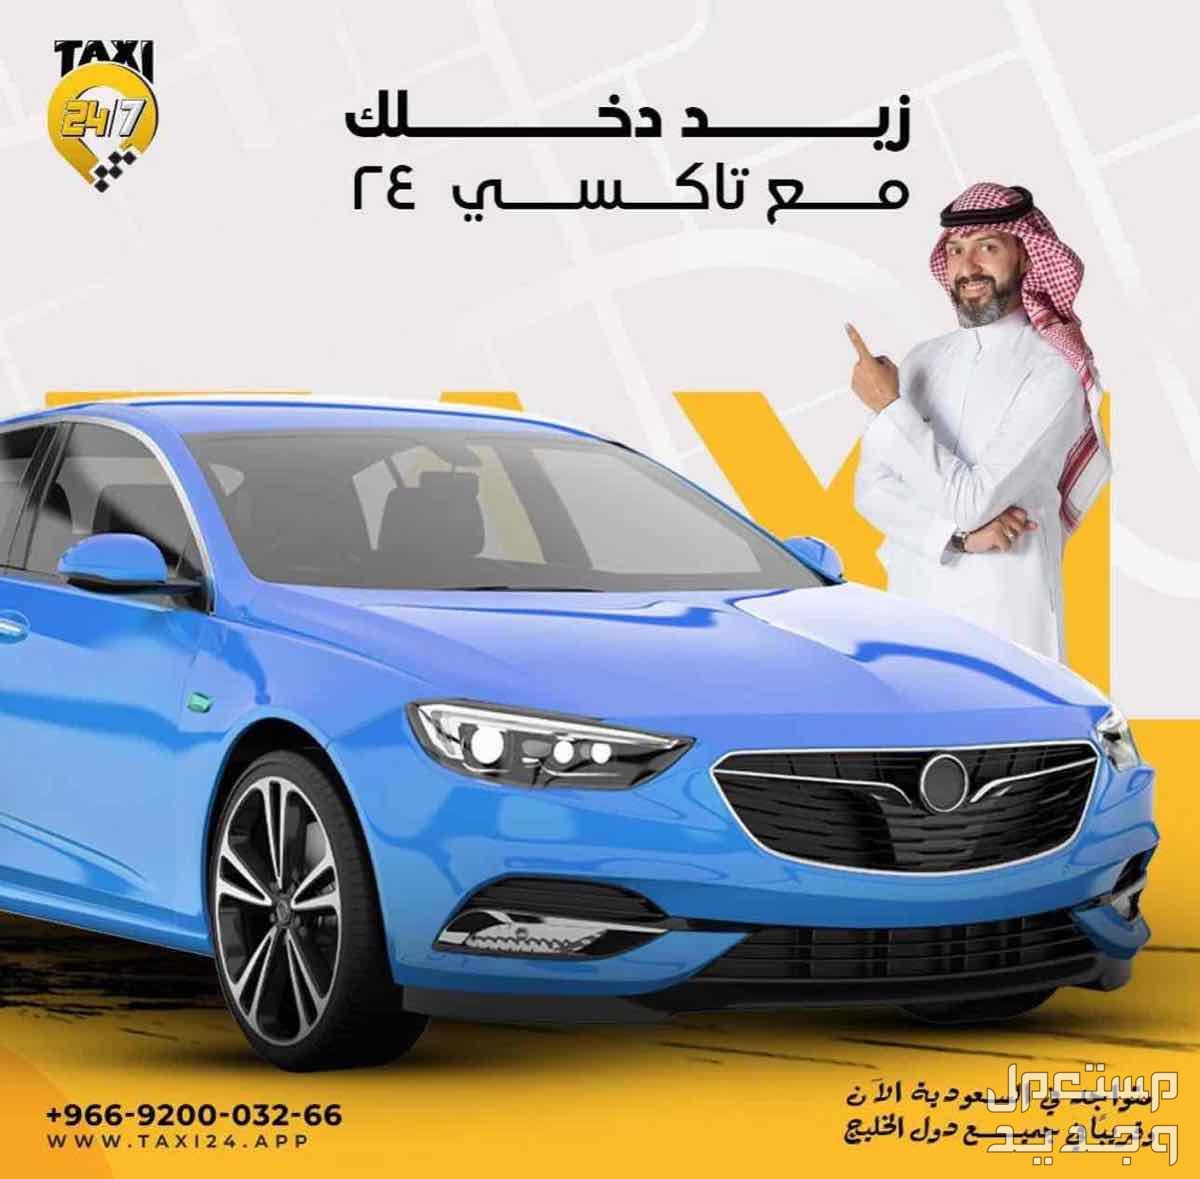 انضم لفريق تاكسي 24 في السعودية